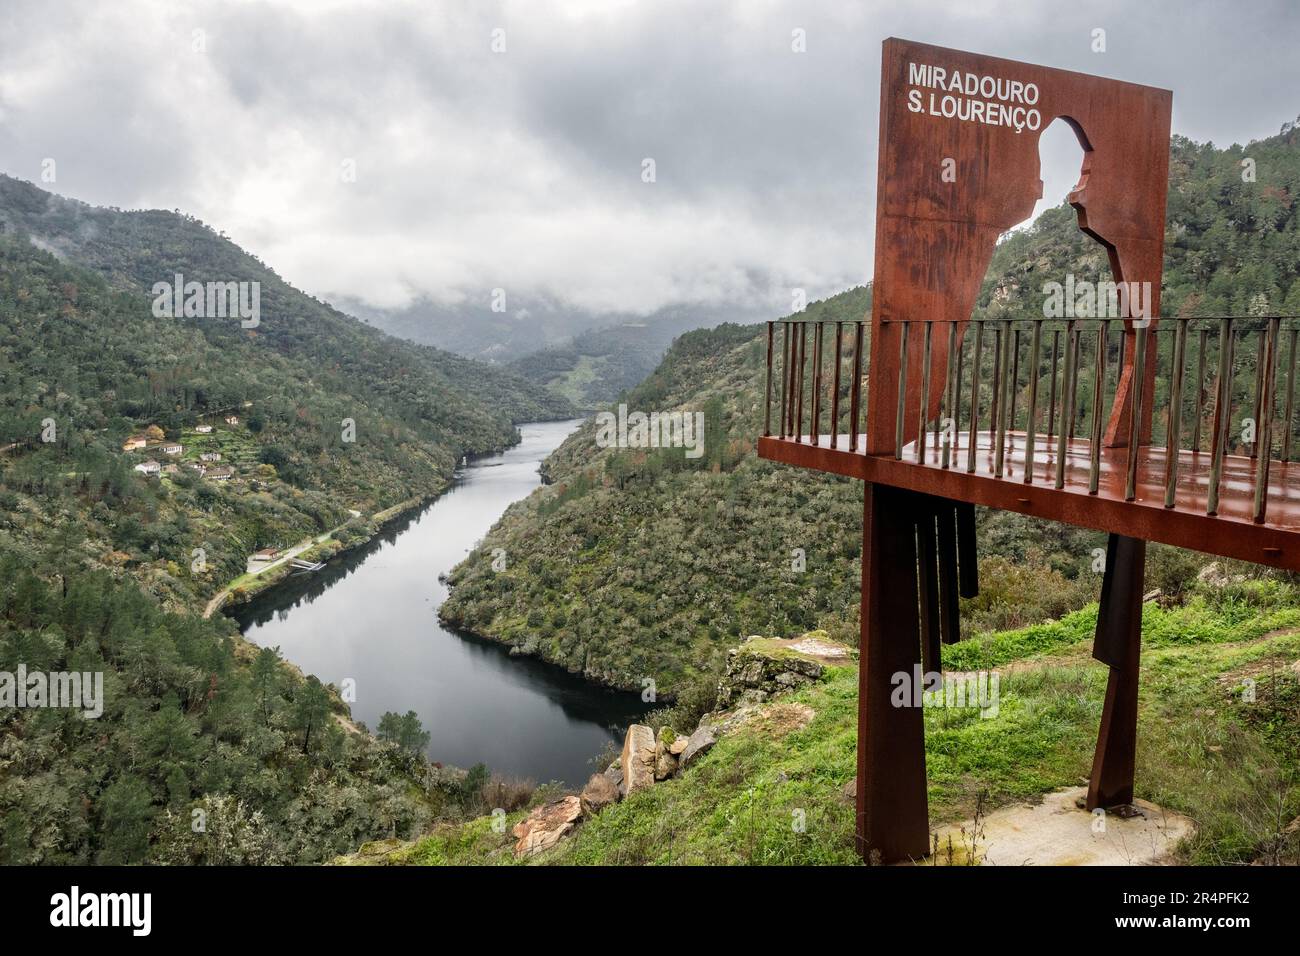 São Lourenço - Carrazeda de Ansiães, Portugal - December 11, 2022: Landscape of the Tua river valley in Portugal, with the São Lourenço viewpoint in t Stock Photo